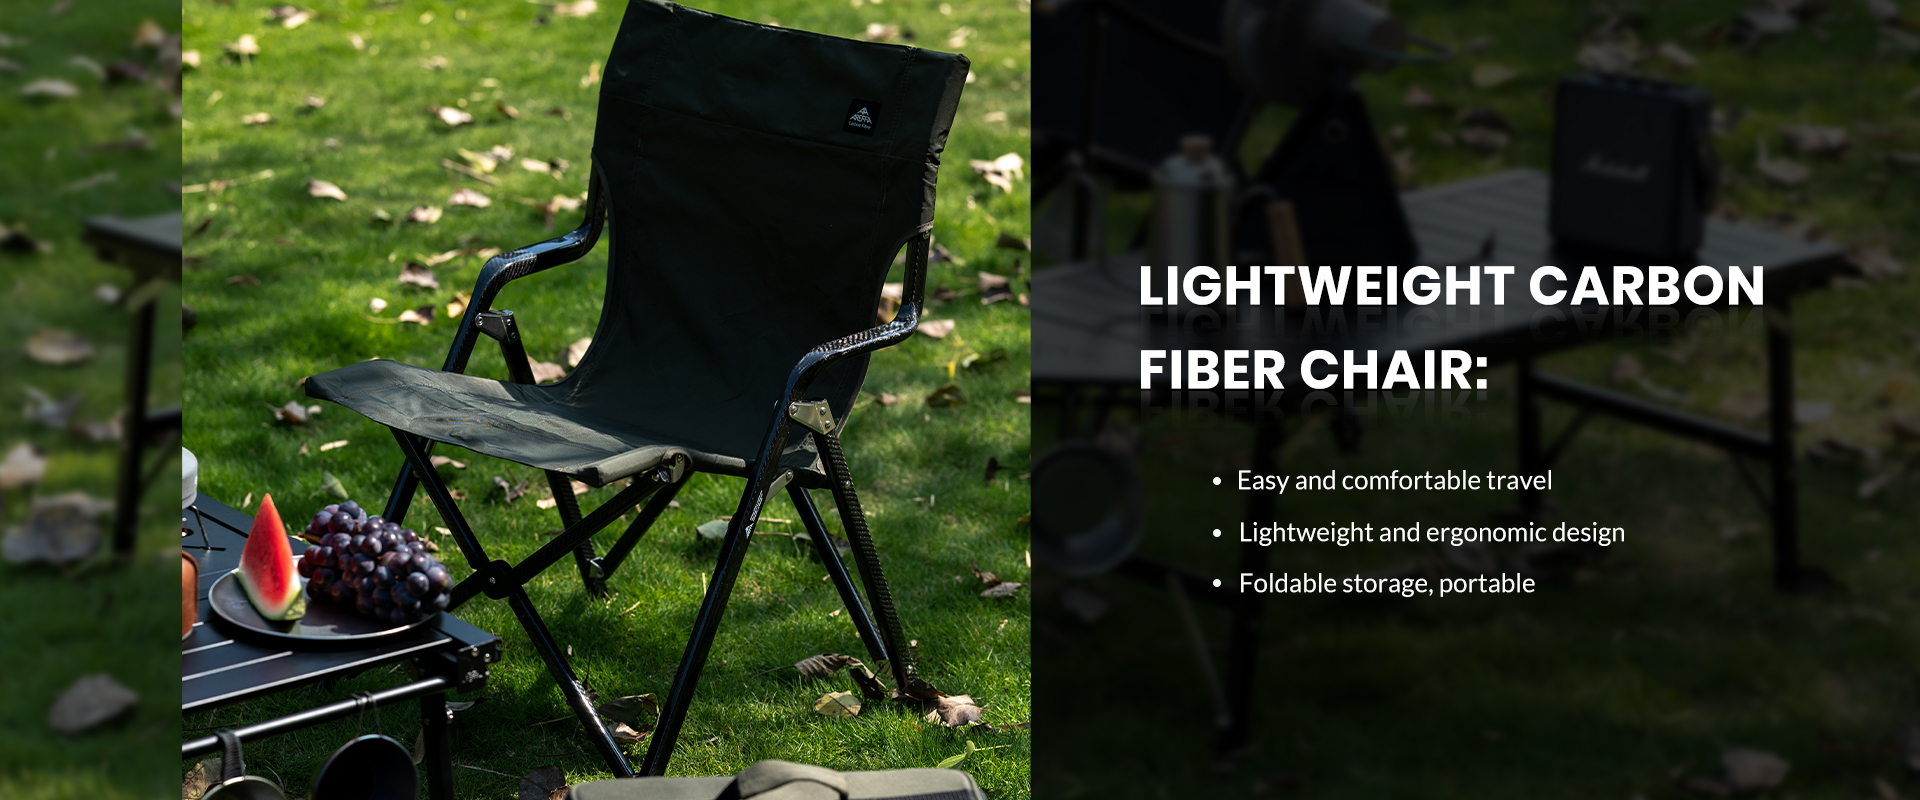 Lightweight Carbon Fiber Chair